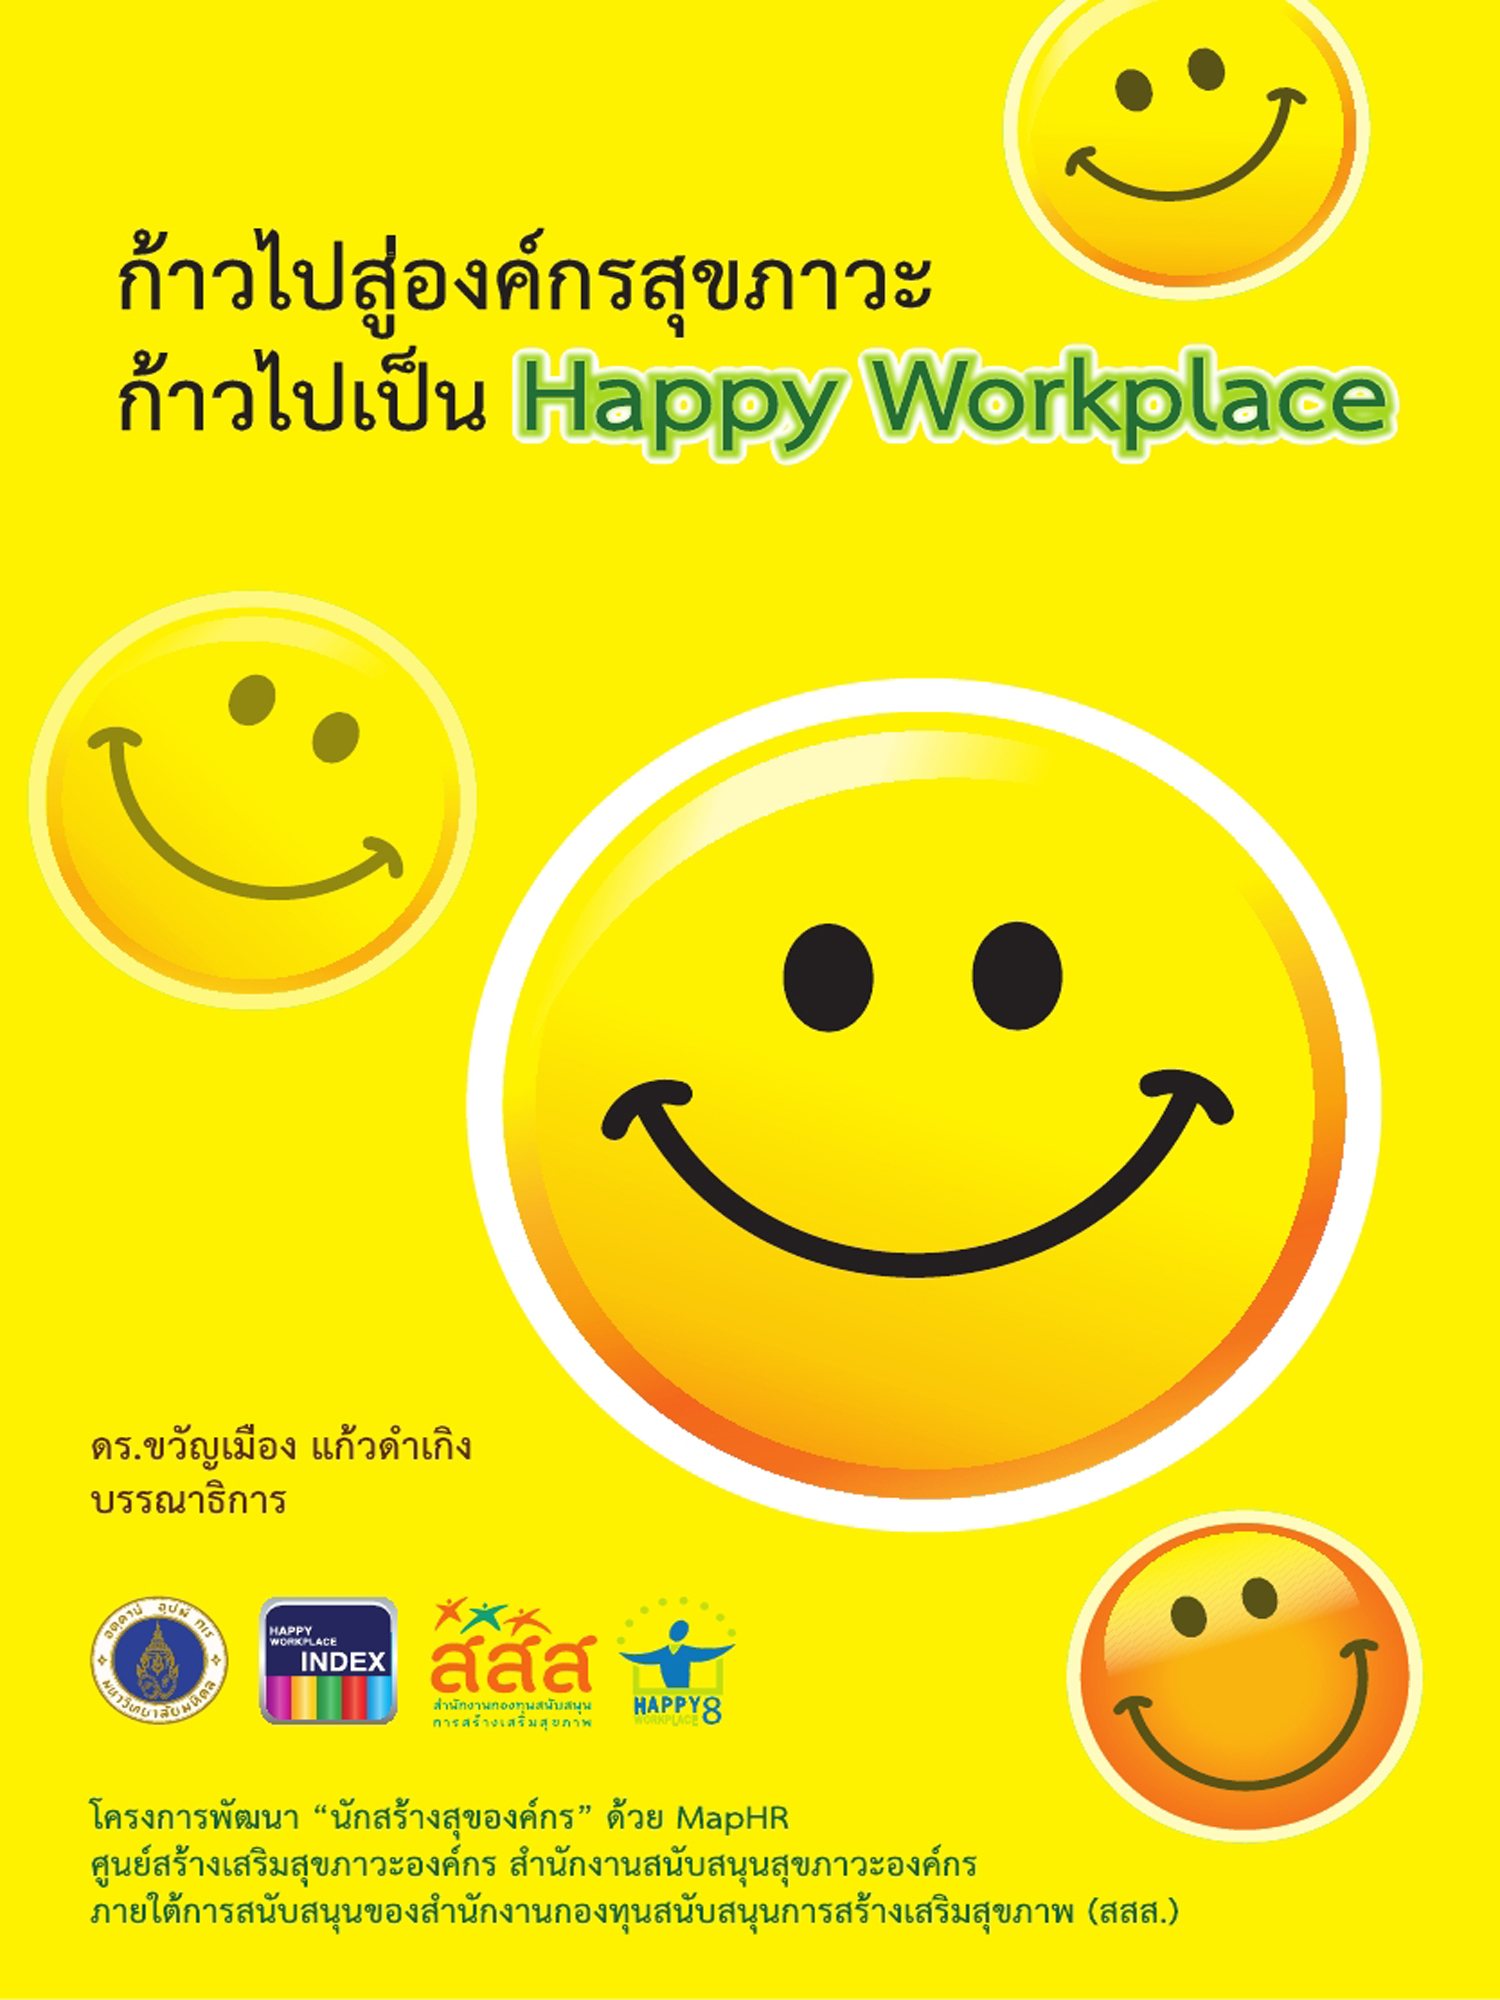 ก้าวไปสู่องค์กรสุขภาวะ ก้าวไปเป็น Happy Workplace